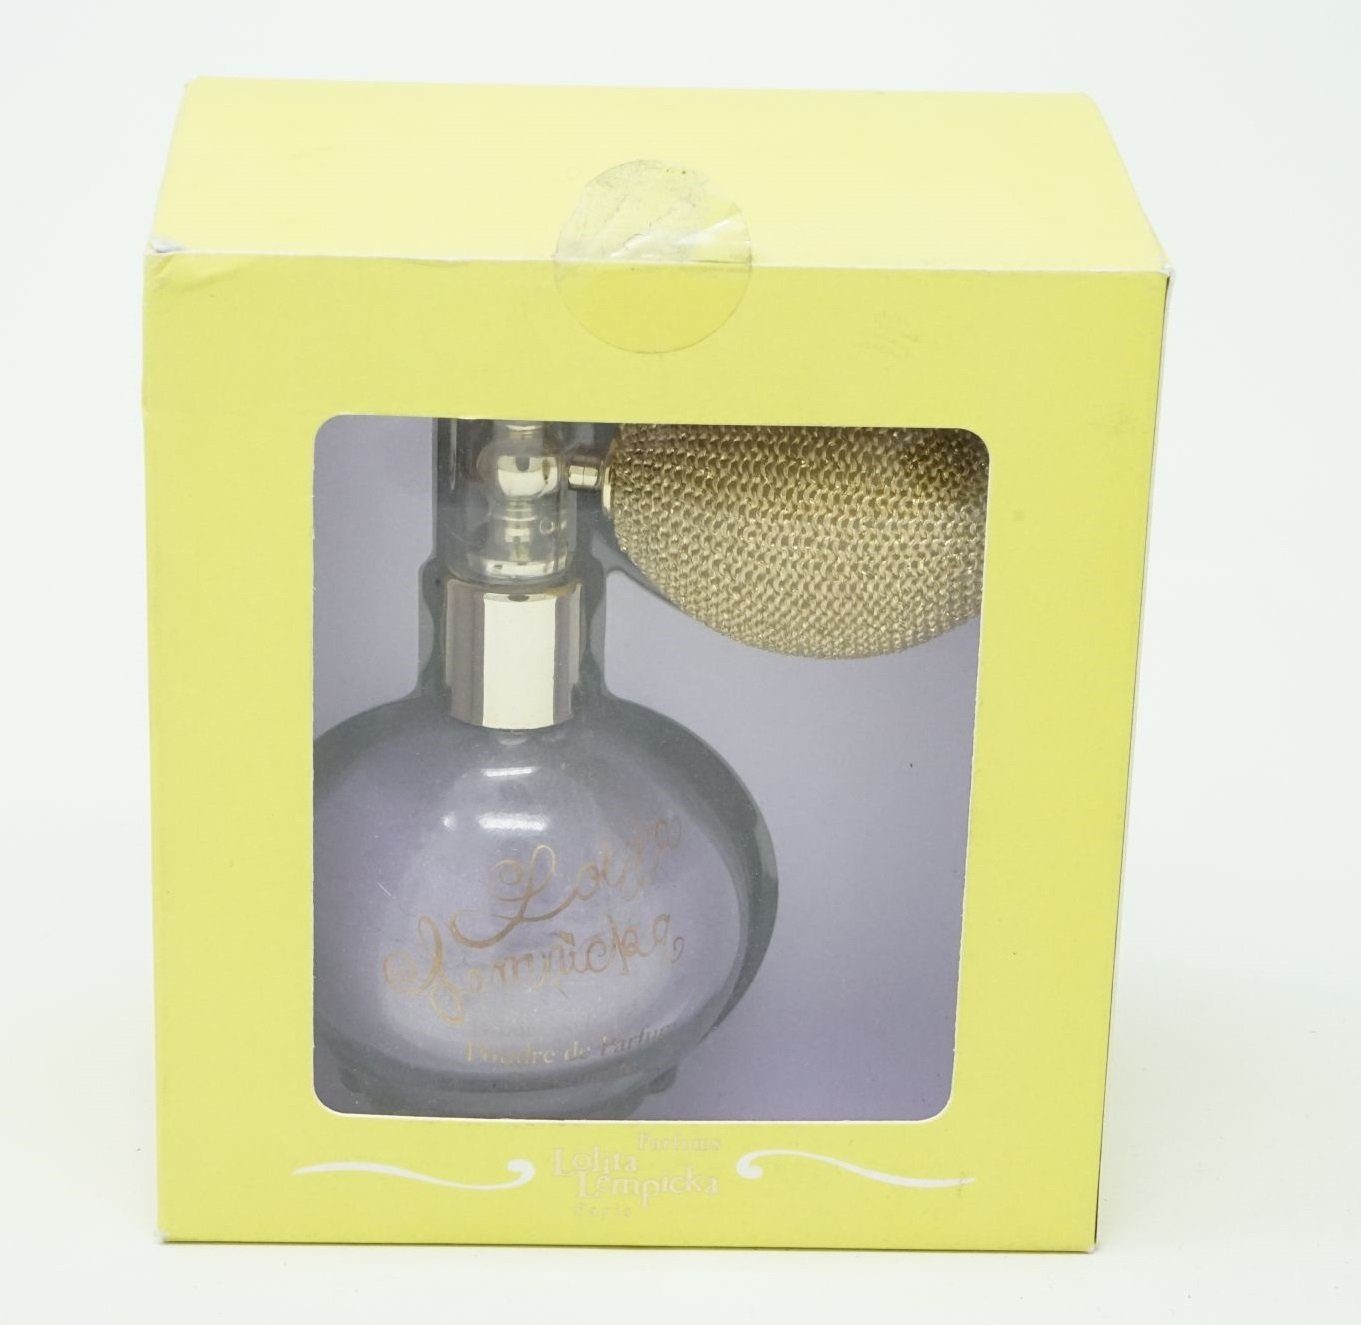 Lolita Lempicka Öl-Parfüm Lempicka Shimmering 17,2g Perfume Lolita Powdered